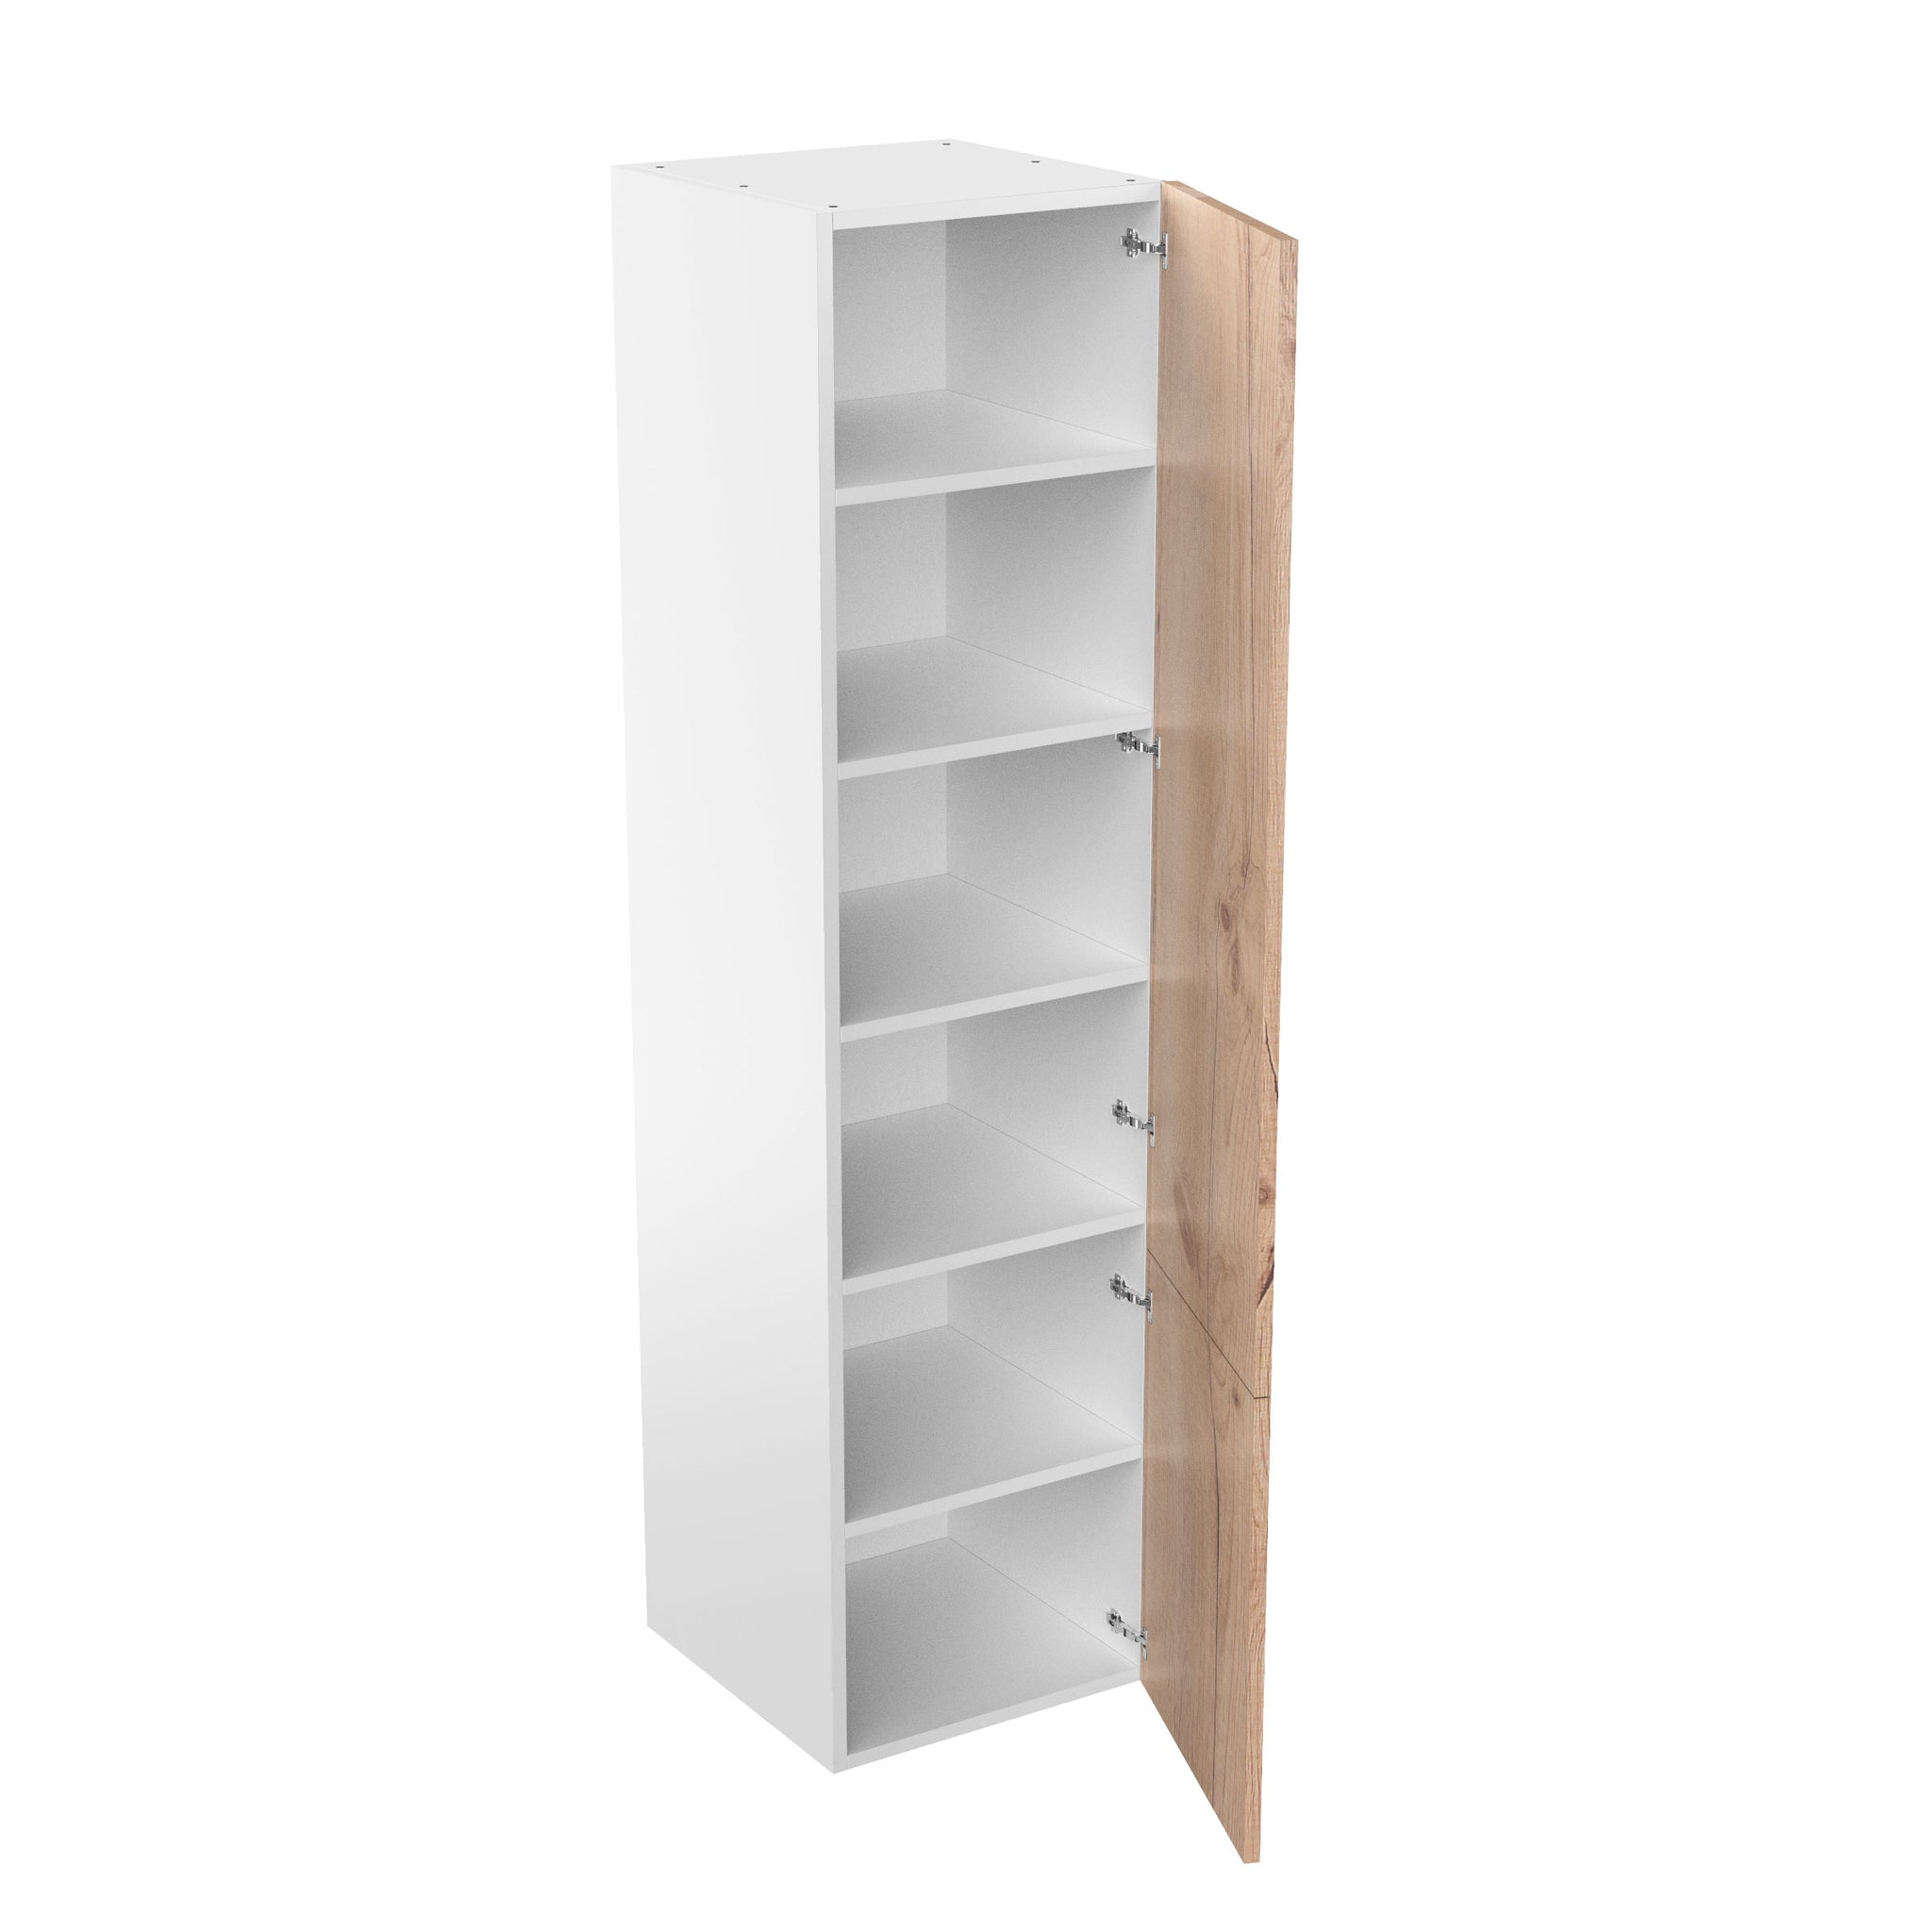 RTA - Rustic Oak - Single Door Tall Cabinets | 24"W x 96"H x 24"D